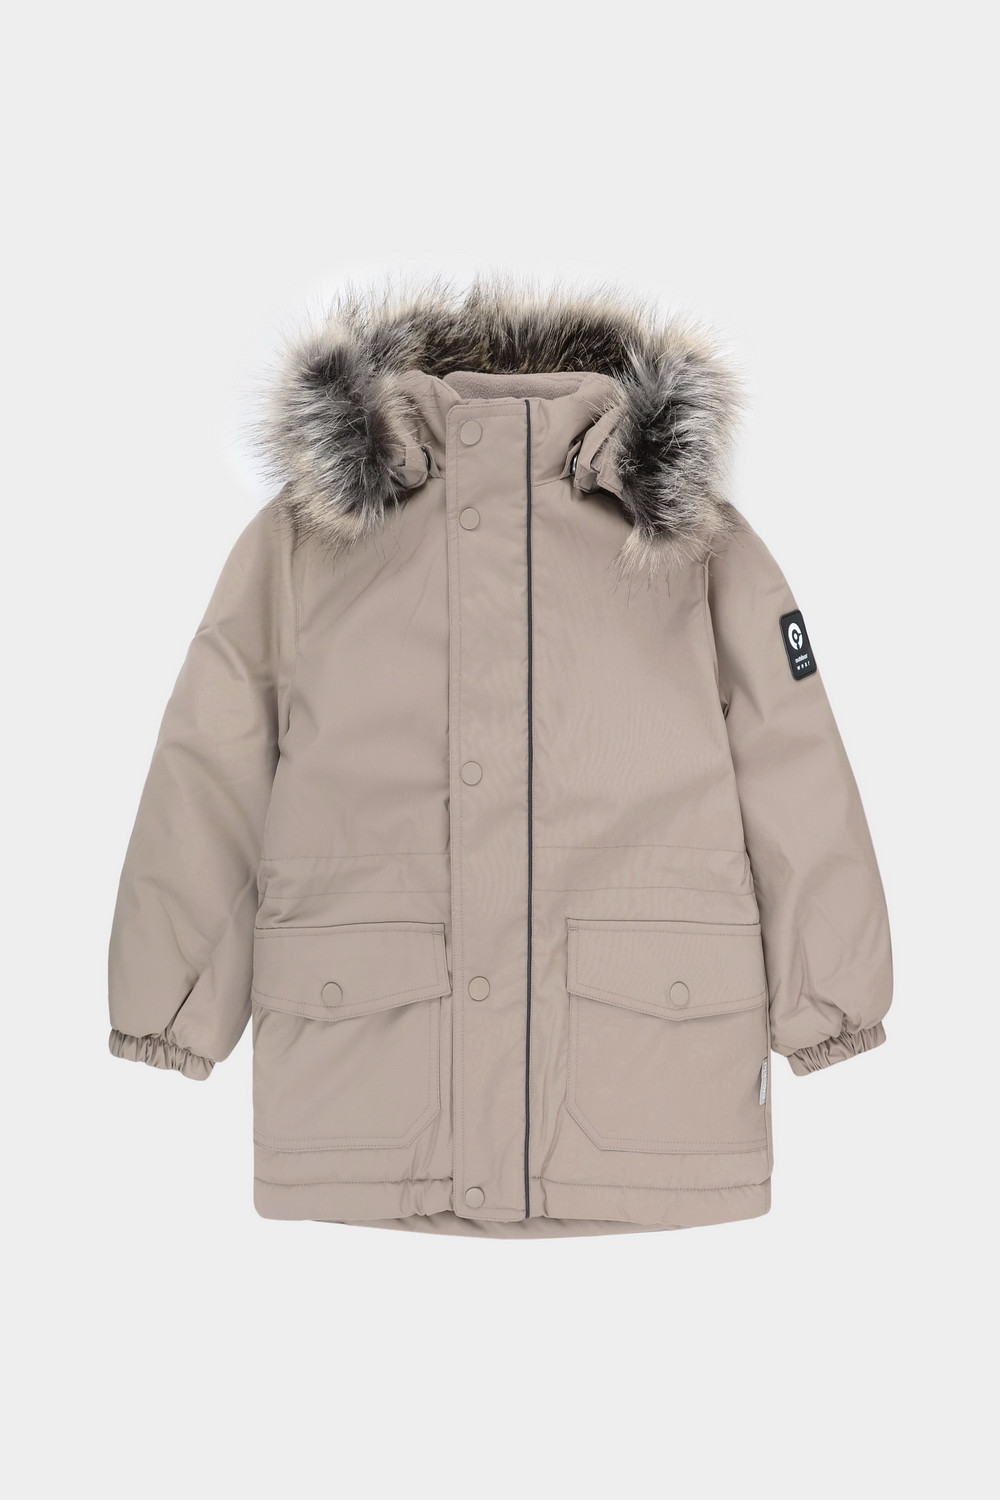 Пальто детское CROCKID 2B LJKT 043.3, бежевый, 128 куртка мембранная женская arc teryx norvan бежевый